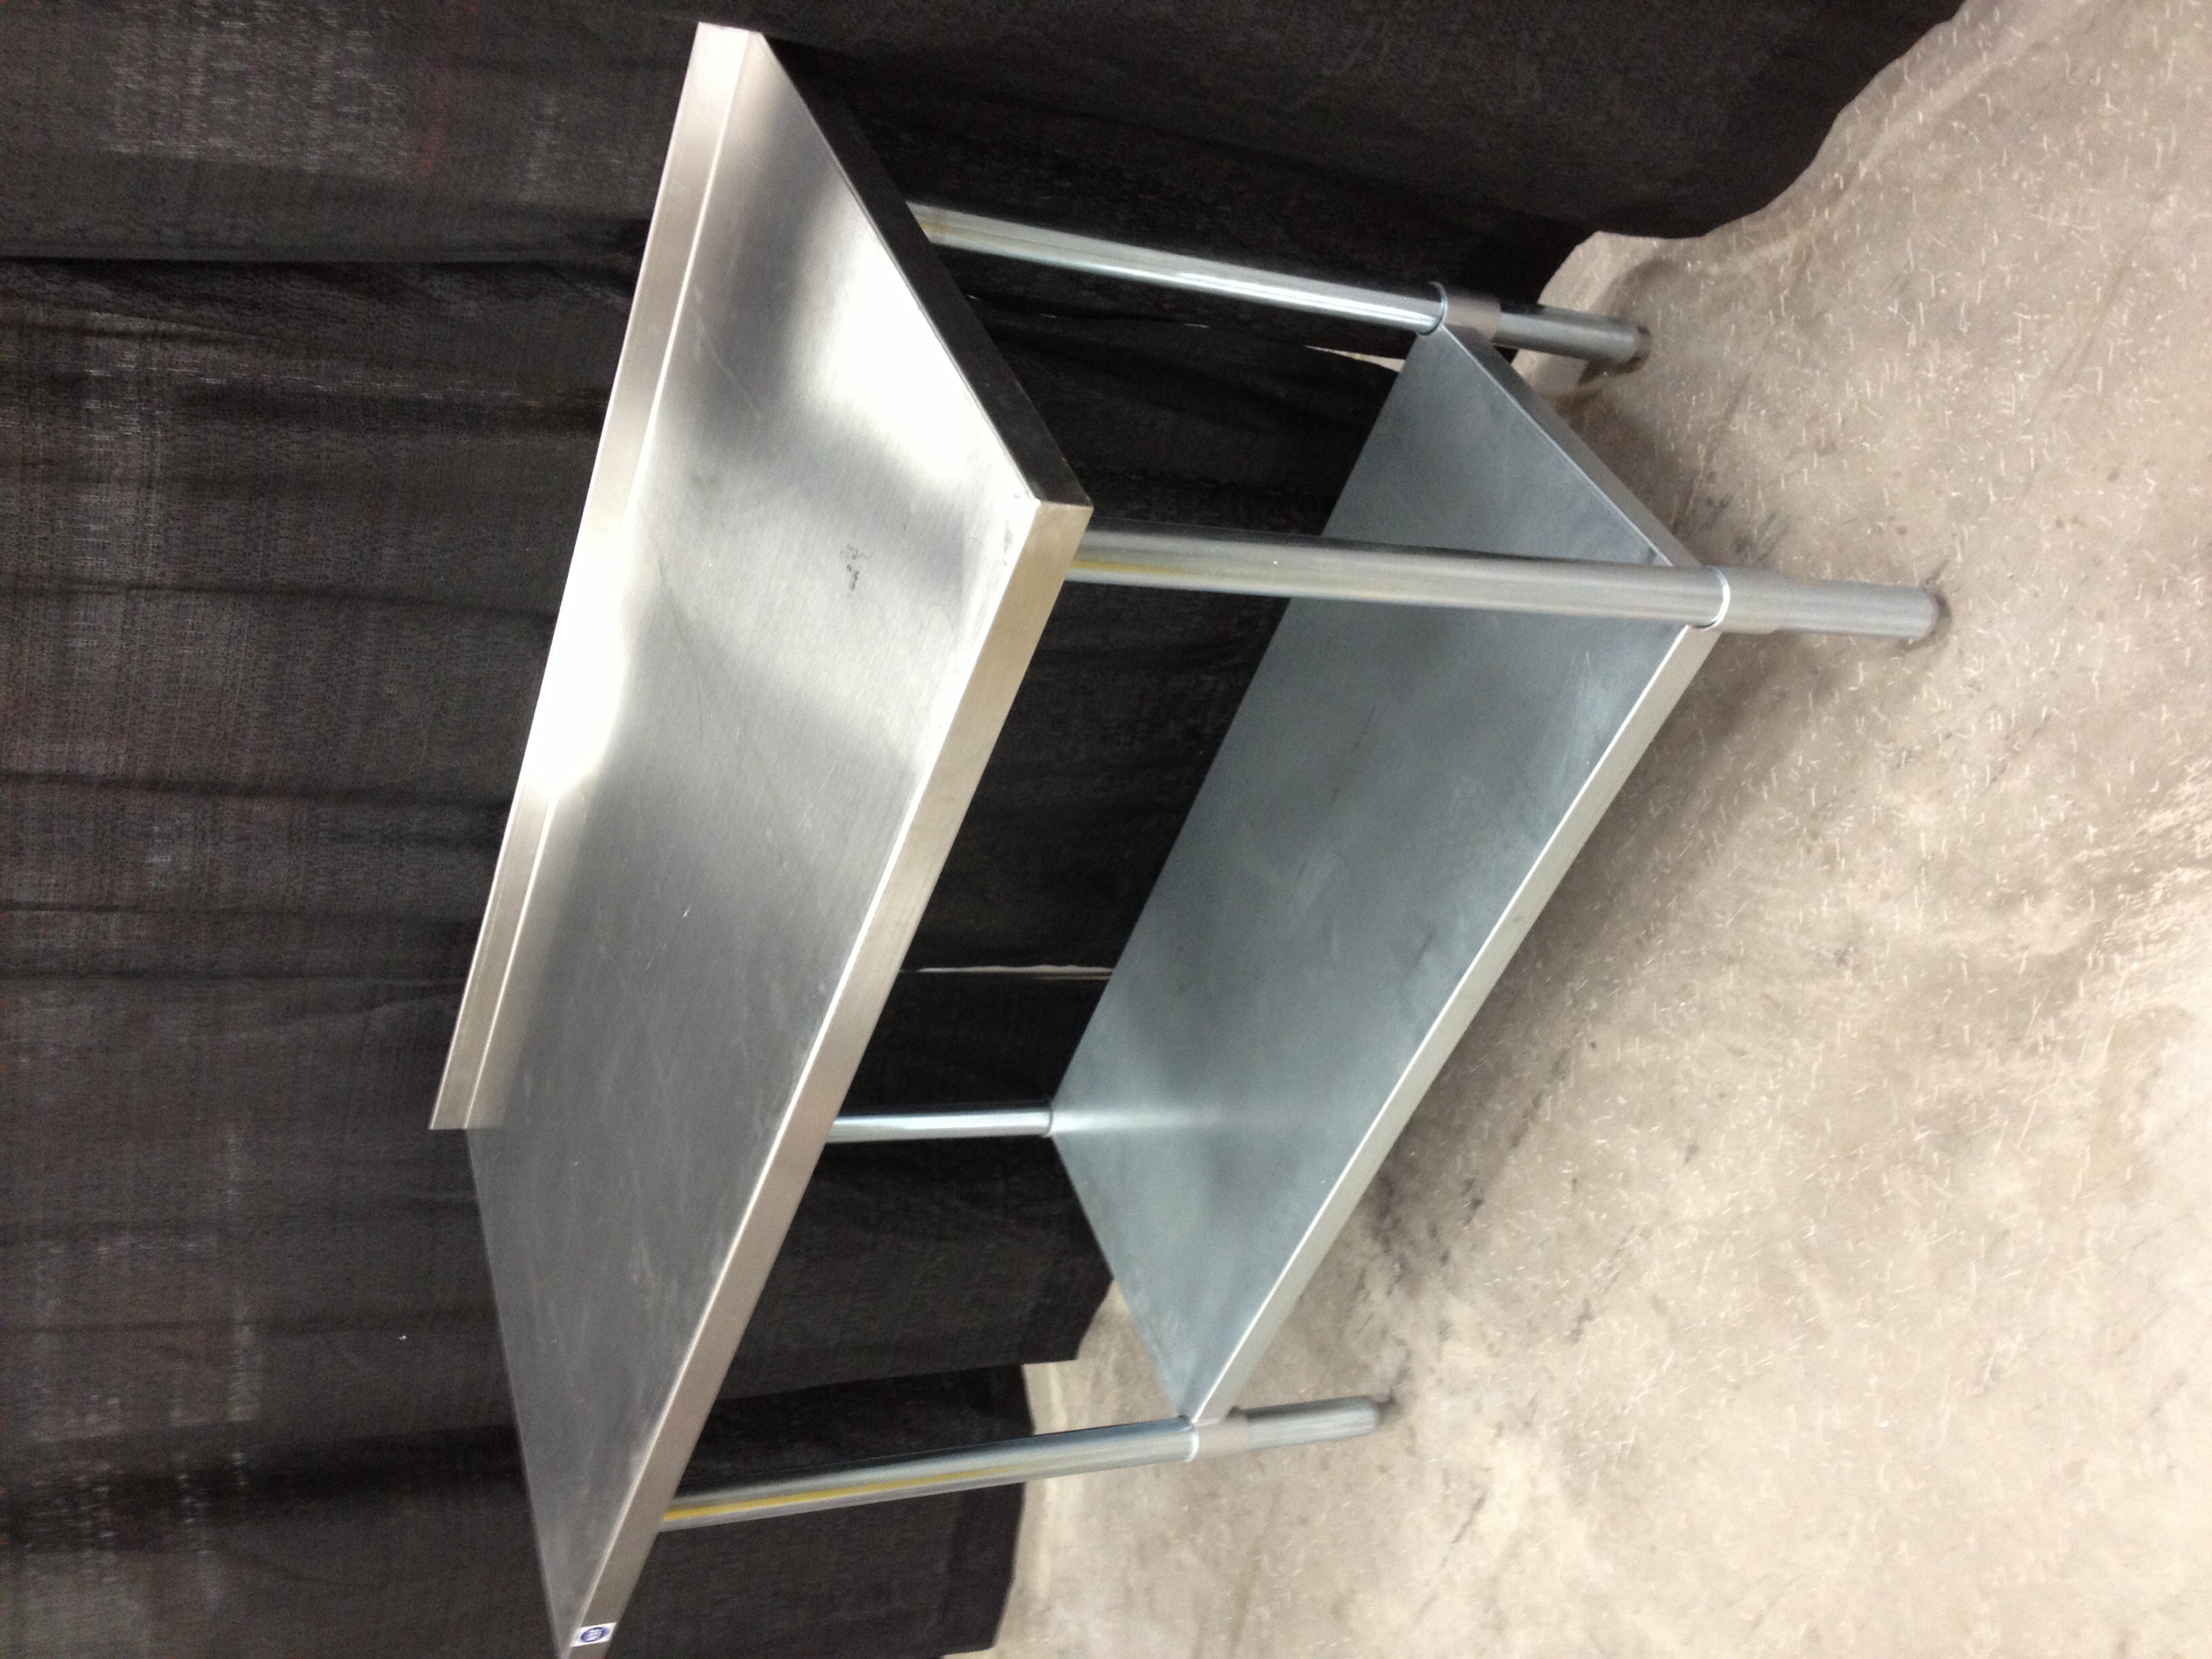 DB Restaurant Supply | STAINLESS STEEL WORK TABLE WITH UNDERSHELF 30X60 Stainless Steel Work Table With Undershelf